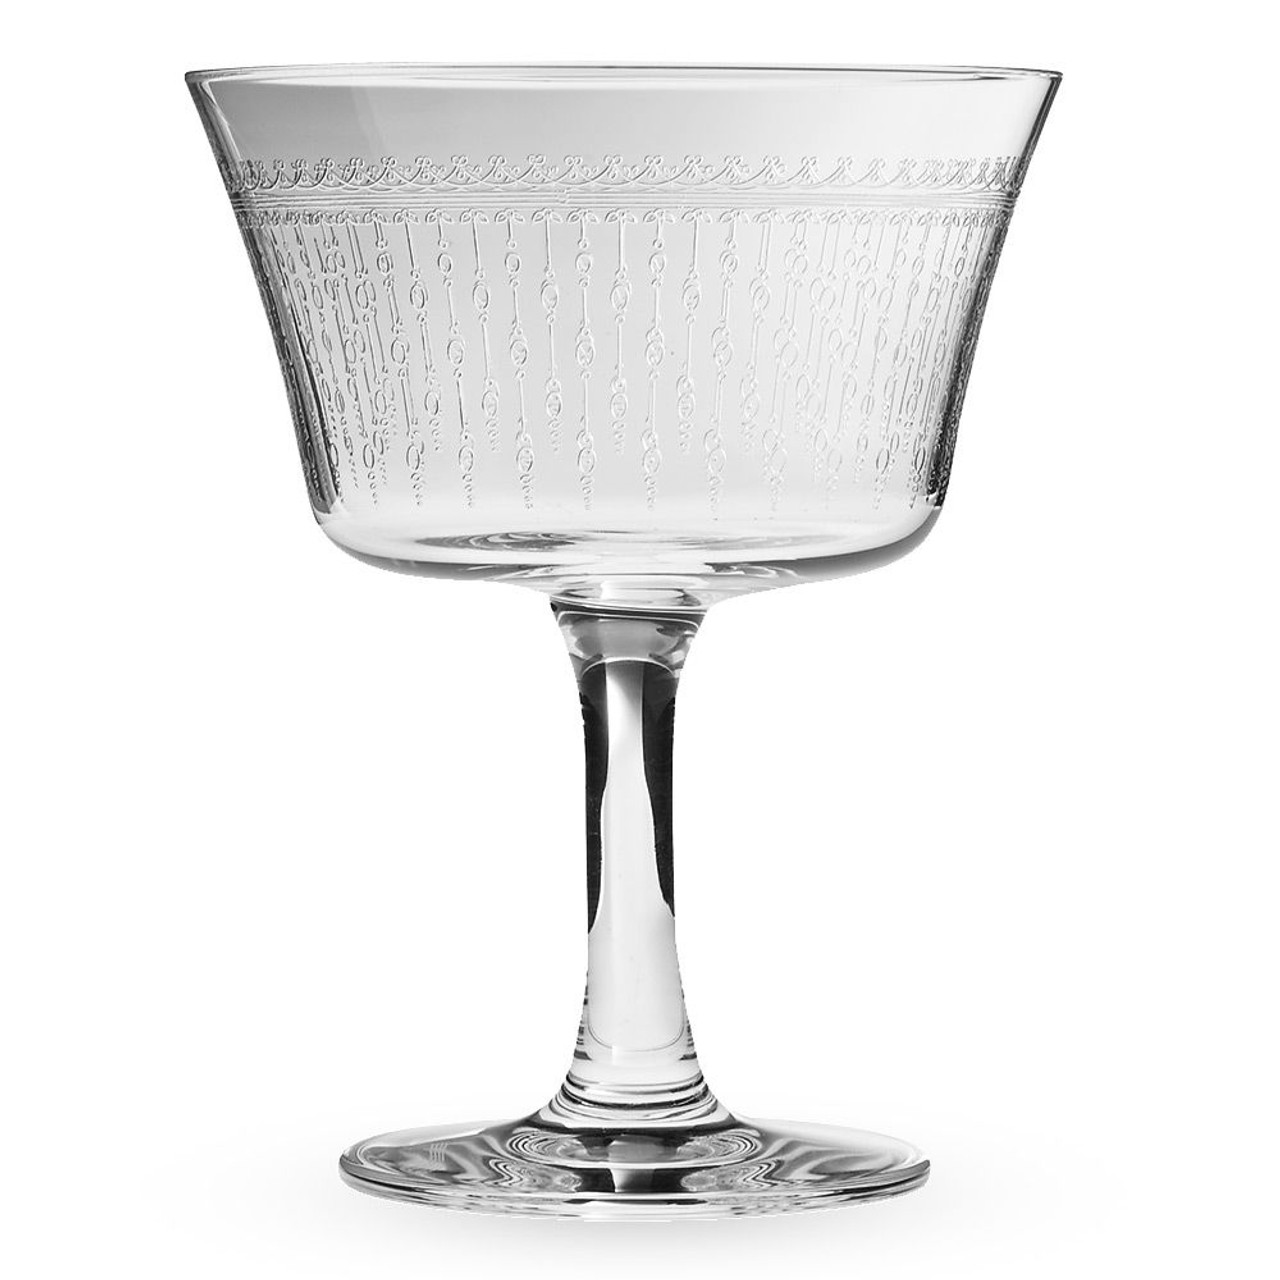 Vintage Etched Cocktail Glasses, Set of 6, Vintage 8 oz Champagne